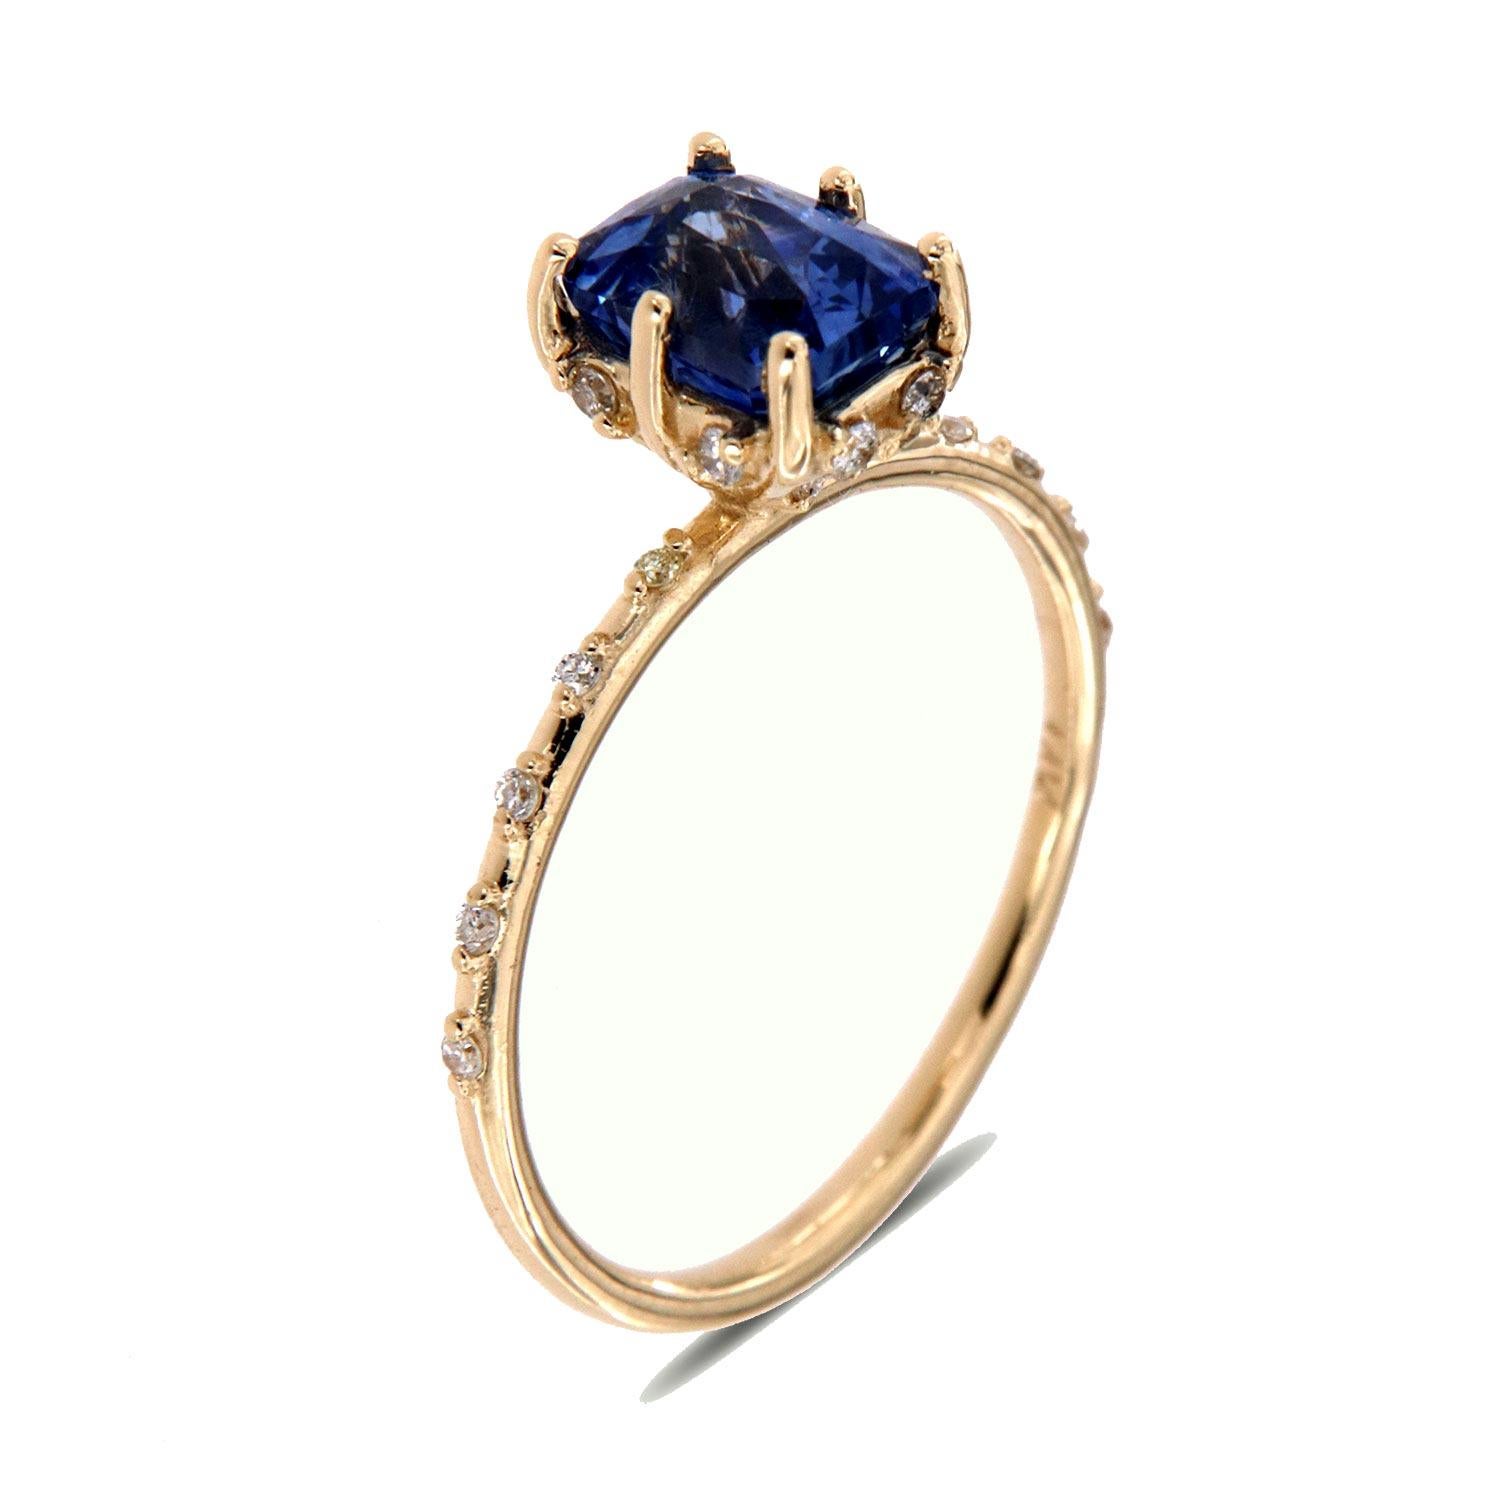 Dieser zarte Ring zeigt einen einzigartigen, länglichen, facettierten, natürlichen, nicht erhitzten hellblauen Saphir von 1,63 Karat, der in sechs (6) winzigen Zacken gefasst ist. Zwölf (12) runde Brillanten sind gleichmäßig unter der Krone auf